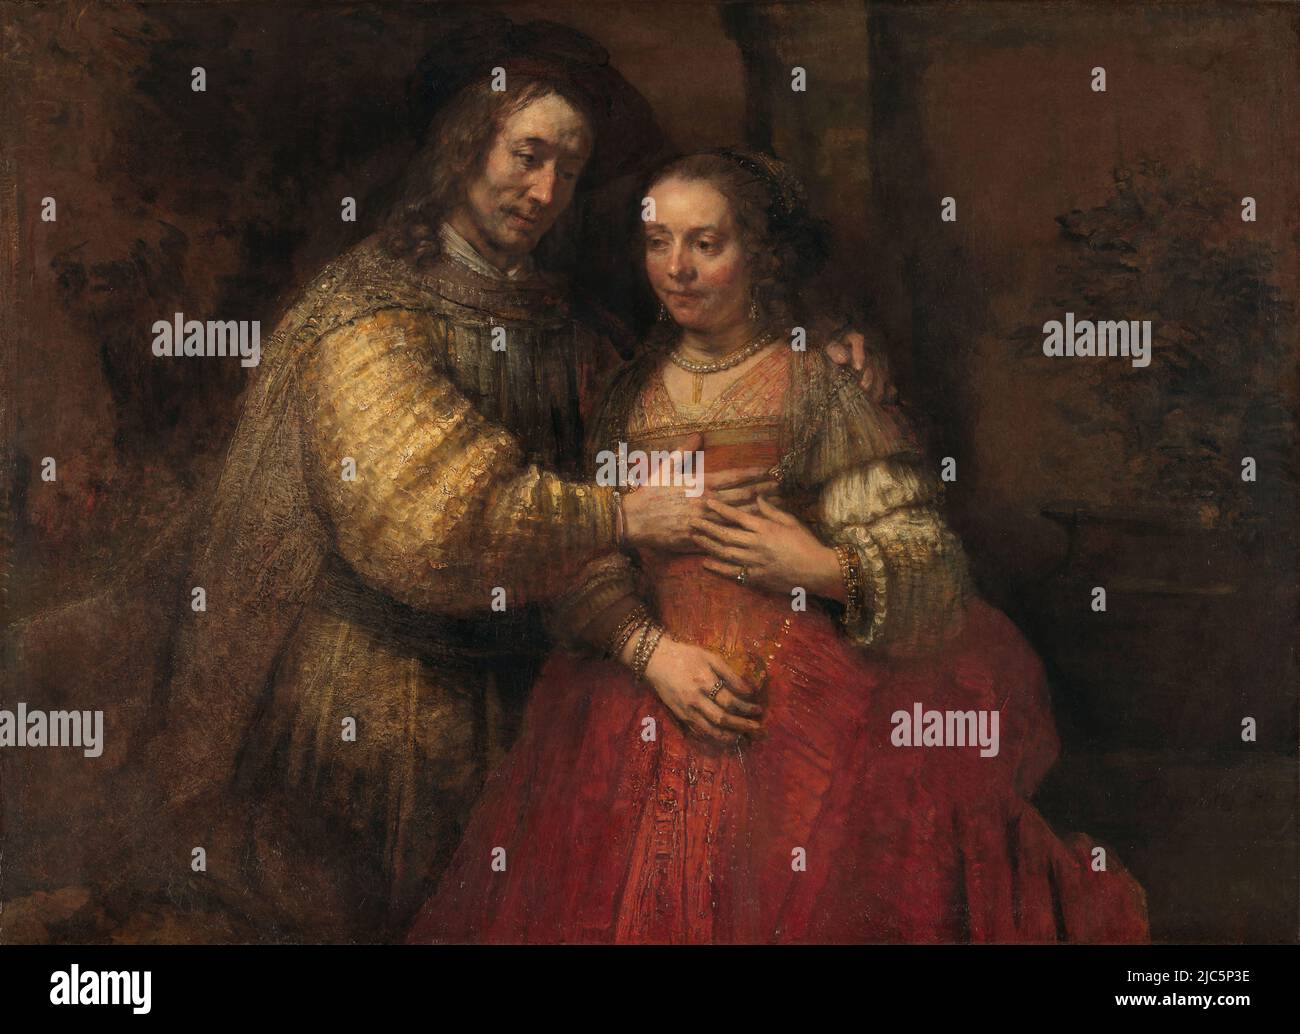 Isaac y Rebecca, conocido como “La novia judía” Retrato de una pareja como Isaac y Rebecca, conocido como 'La novia judía'. Rembrandt van Rijn. c. 1665 - c. 1669 Foto de stock